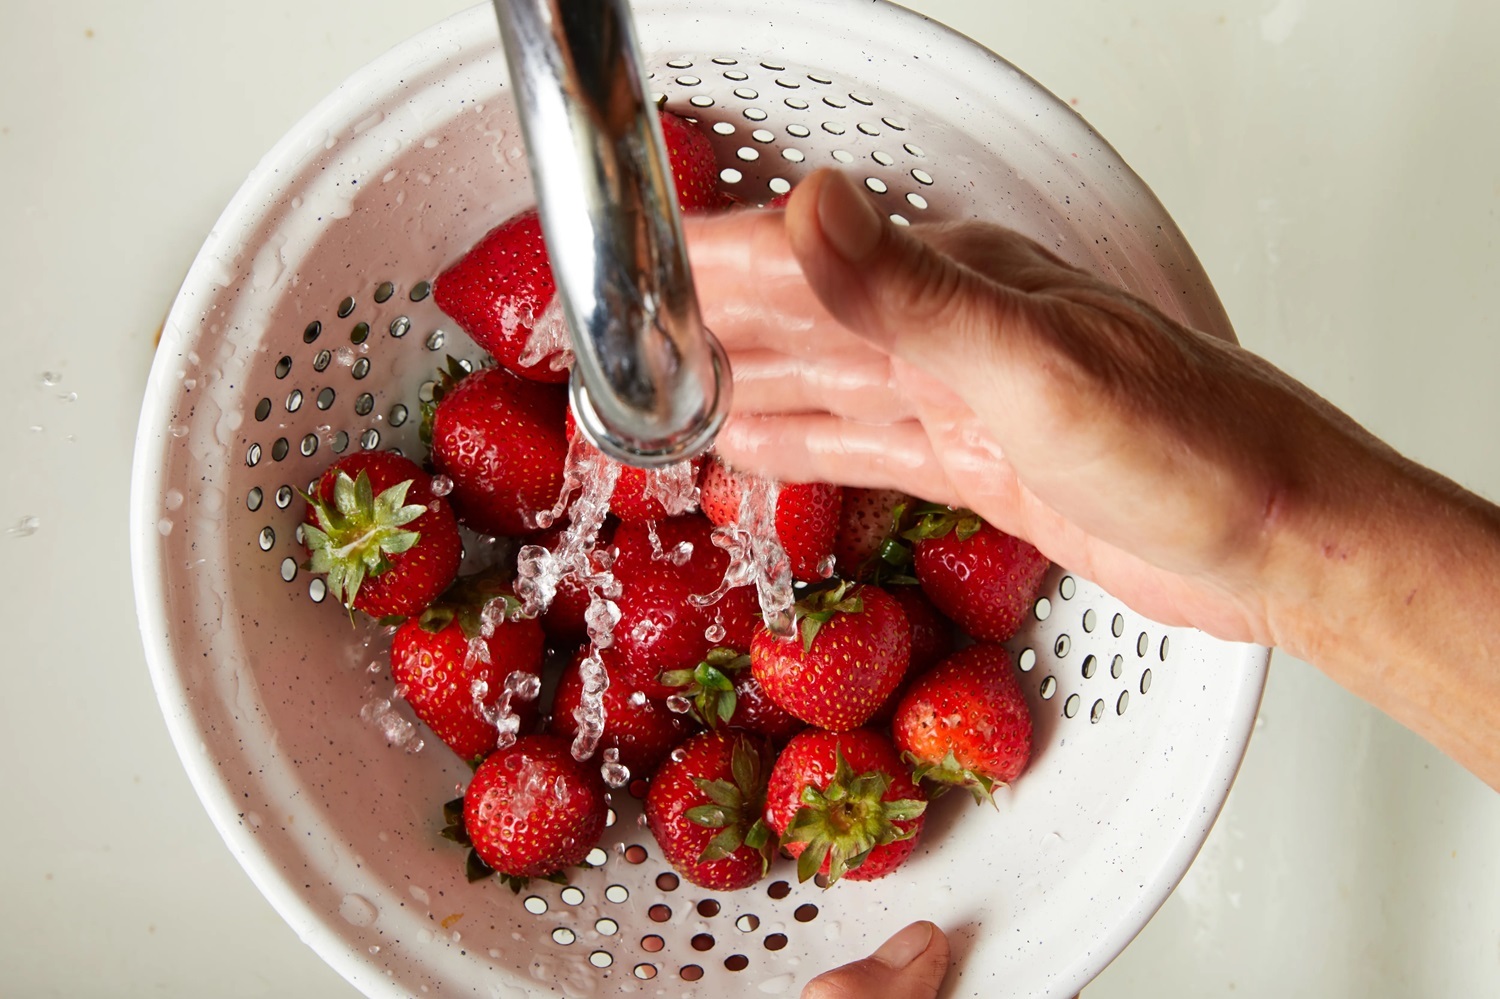 بهترین روش شستن توت فرنگی ؛ چگونه کرم توت فرنگی را از بین ببریم ؟ | فیلم شستن توت فرنگی با نمک را ببینید